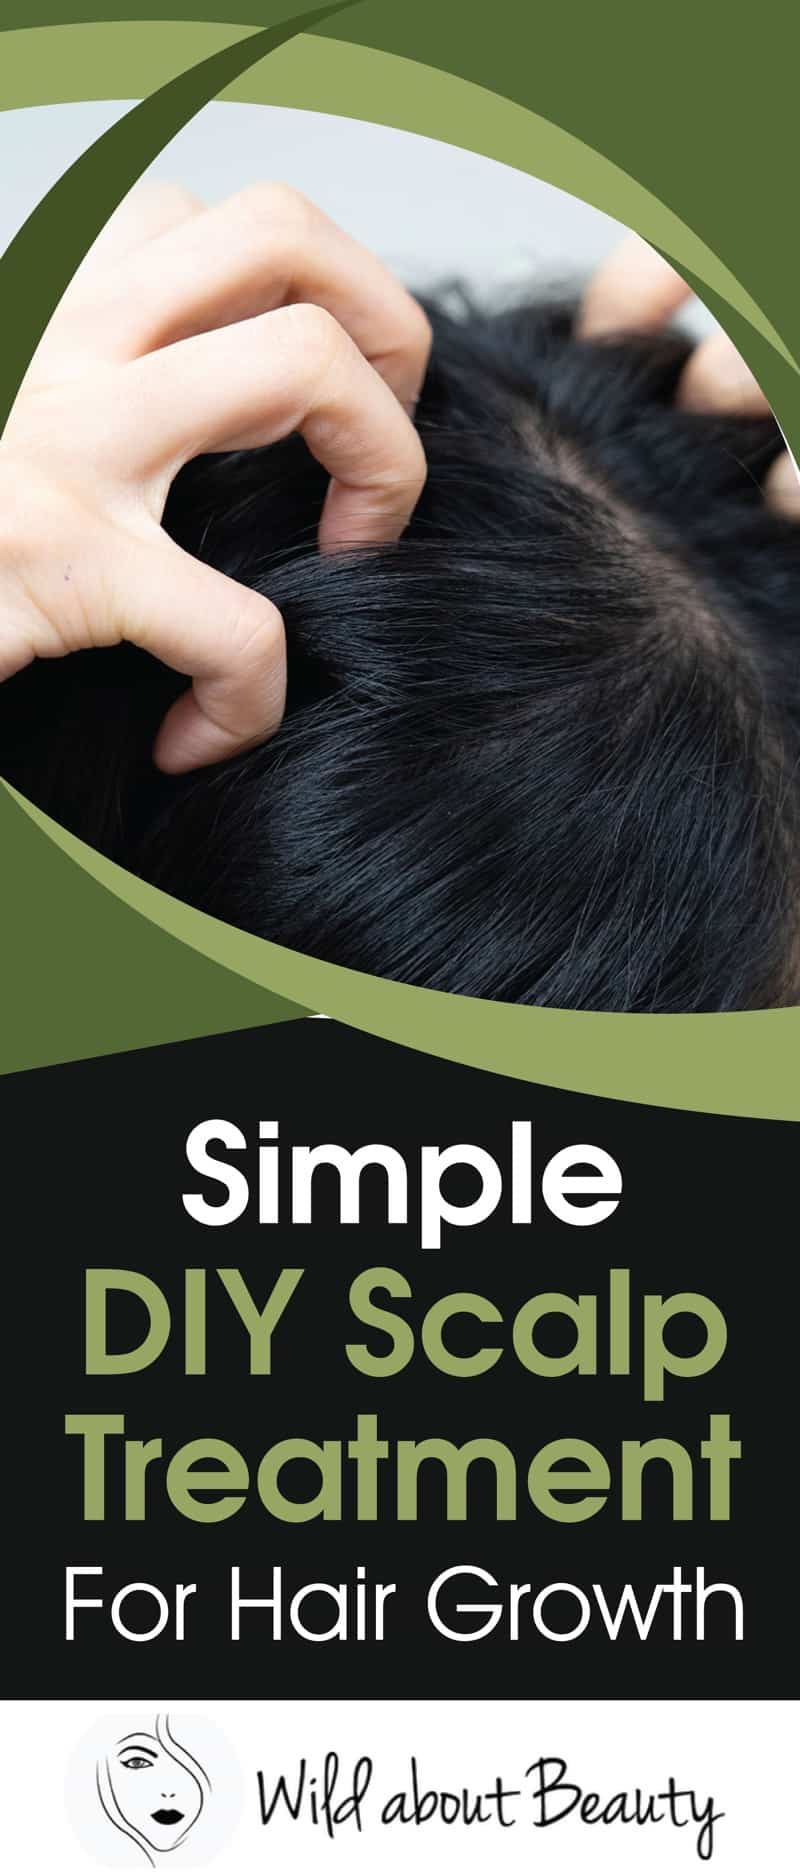 Simple DIY Scalp Treatment For Hair Growth